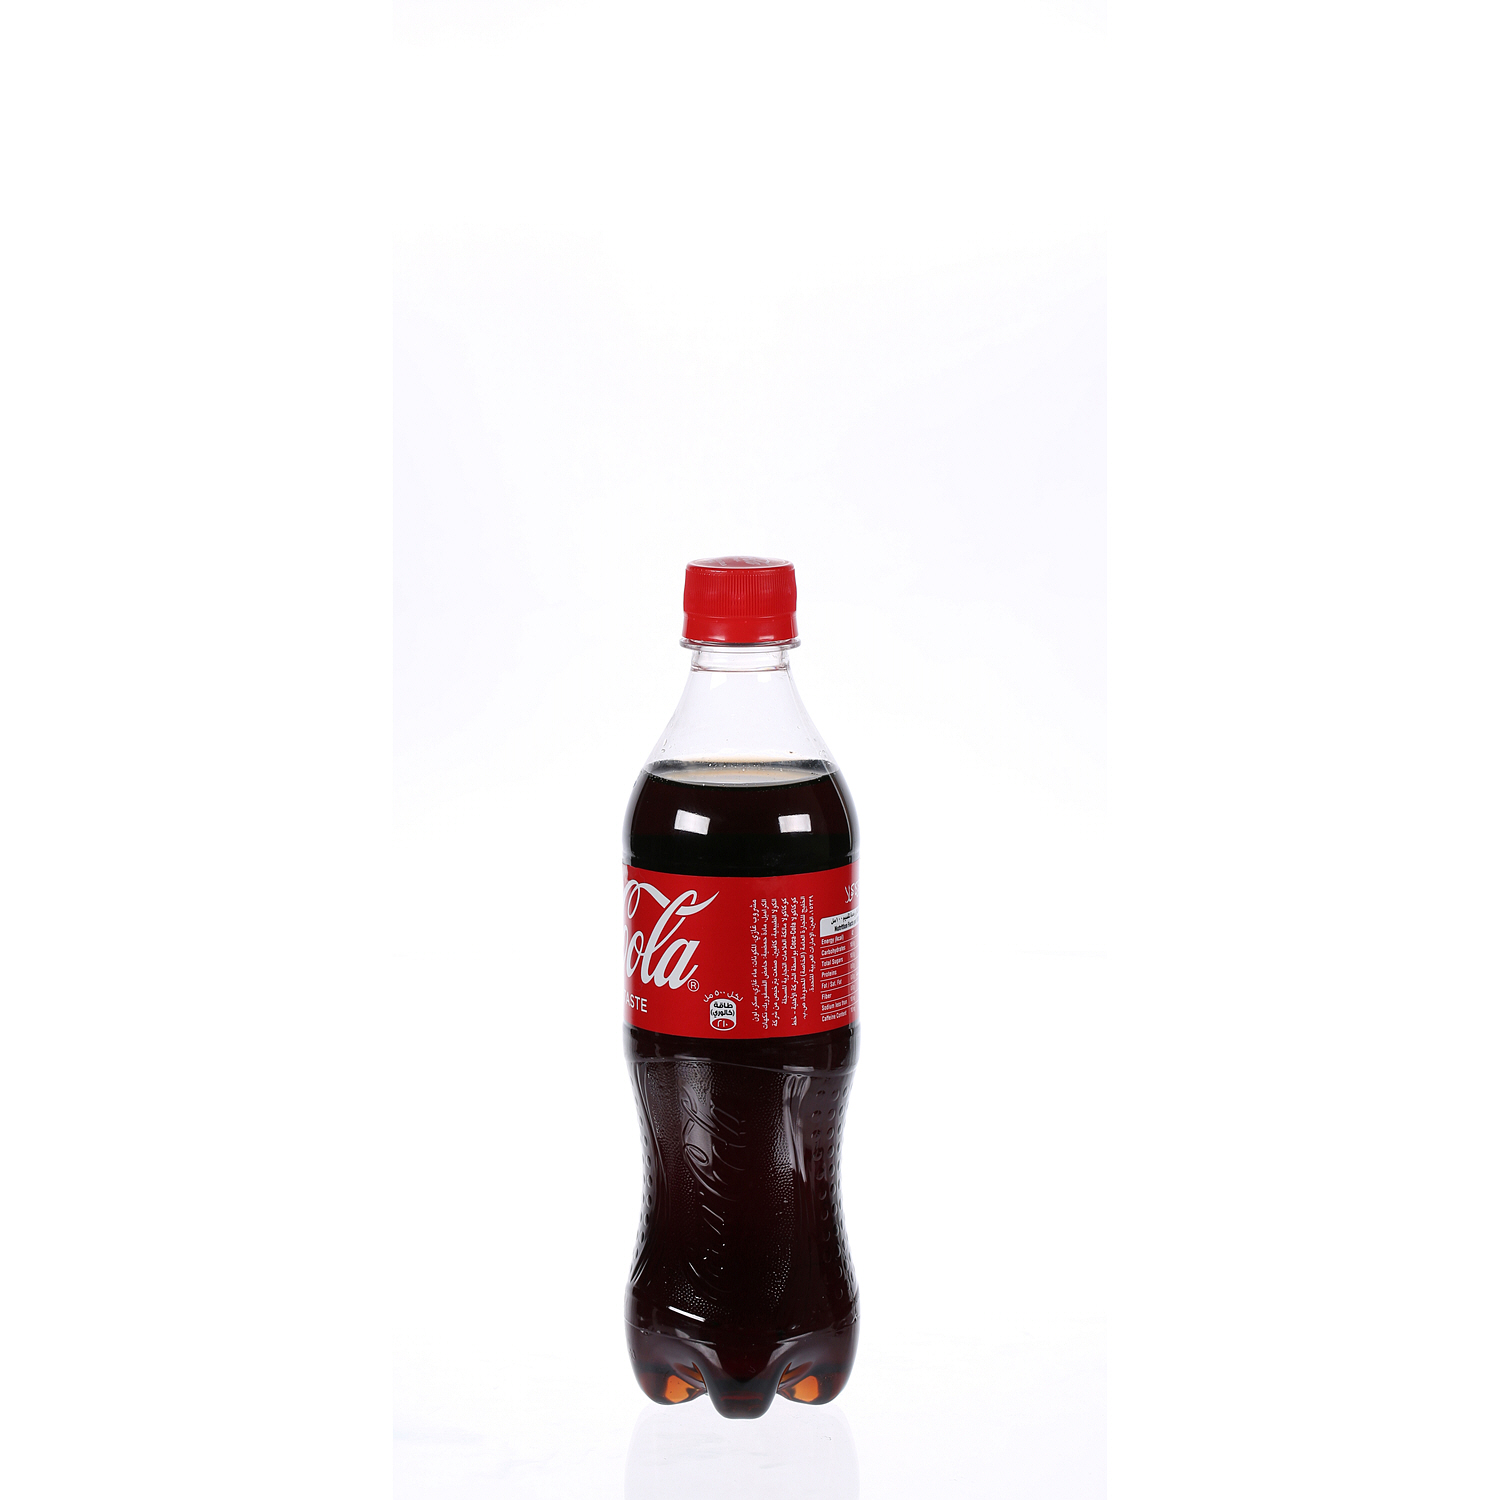 Coca-cola Original Taste Carbonated Soft Drink Pet 500 ml